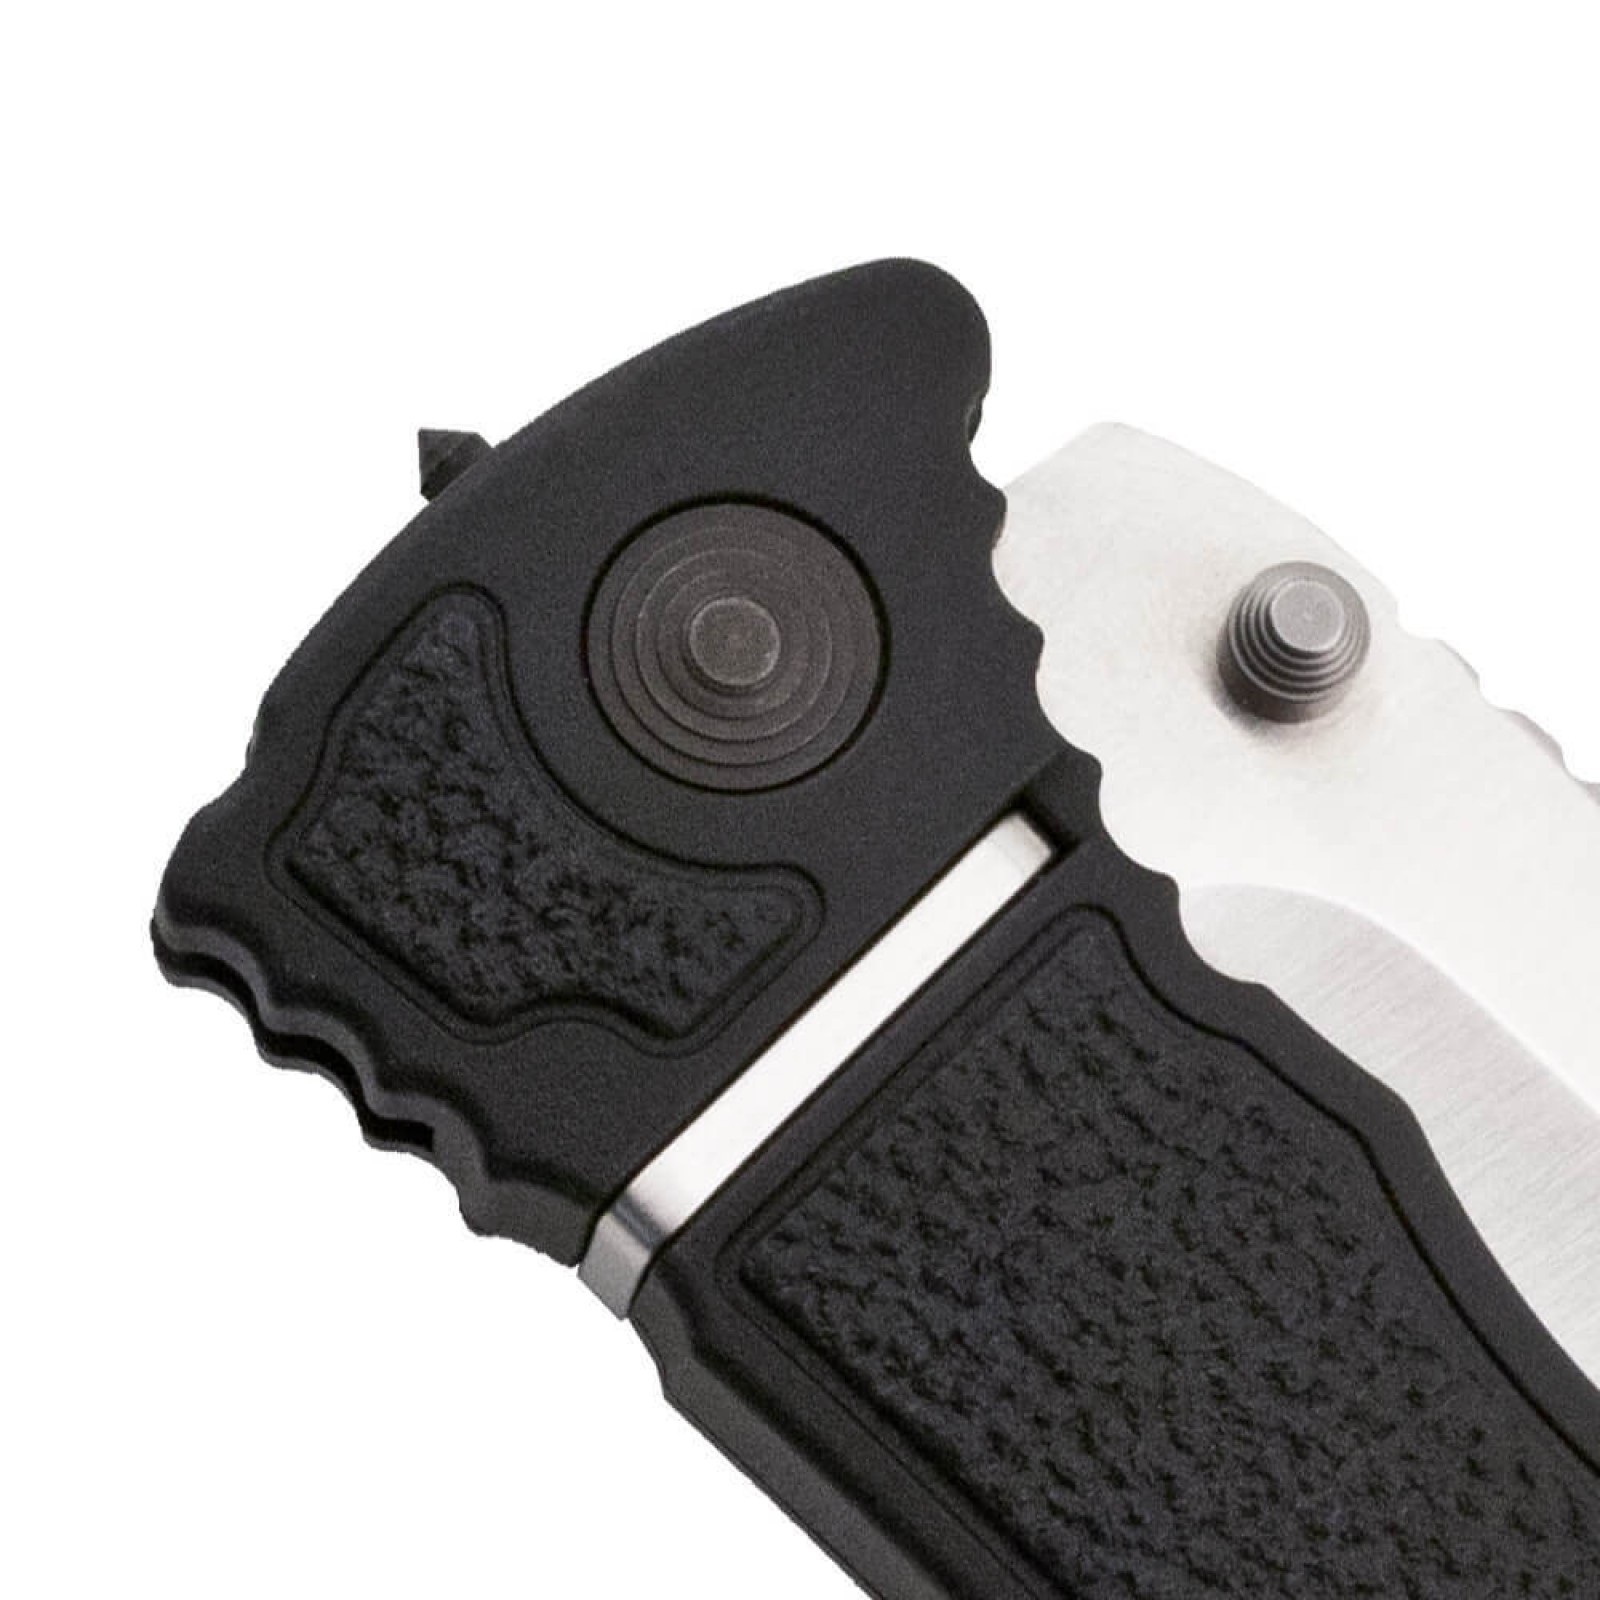 Складной нож TRIDENT ELITE - SOG TF101, сталь AUS-8, рукоять термопластик GRN с резиновыми вставками - фото 5